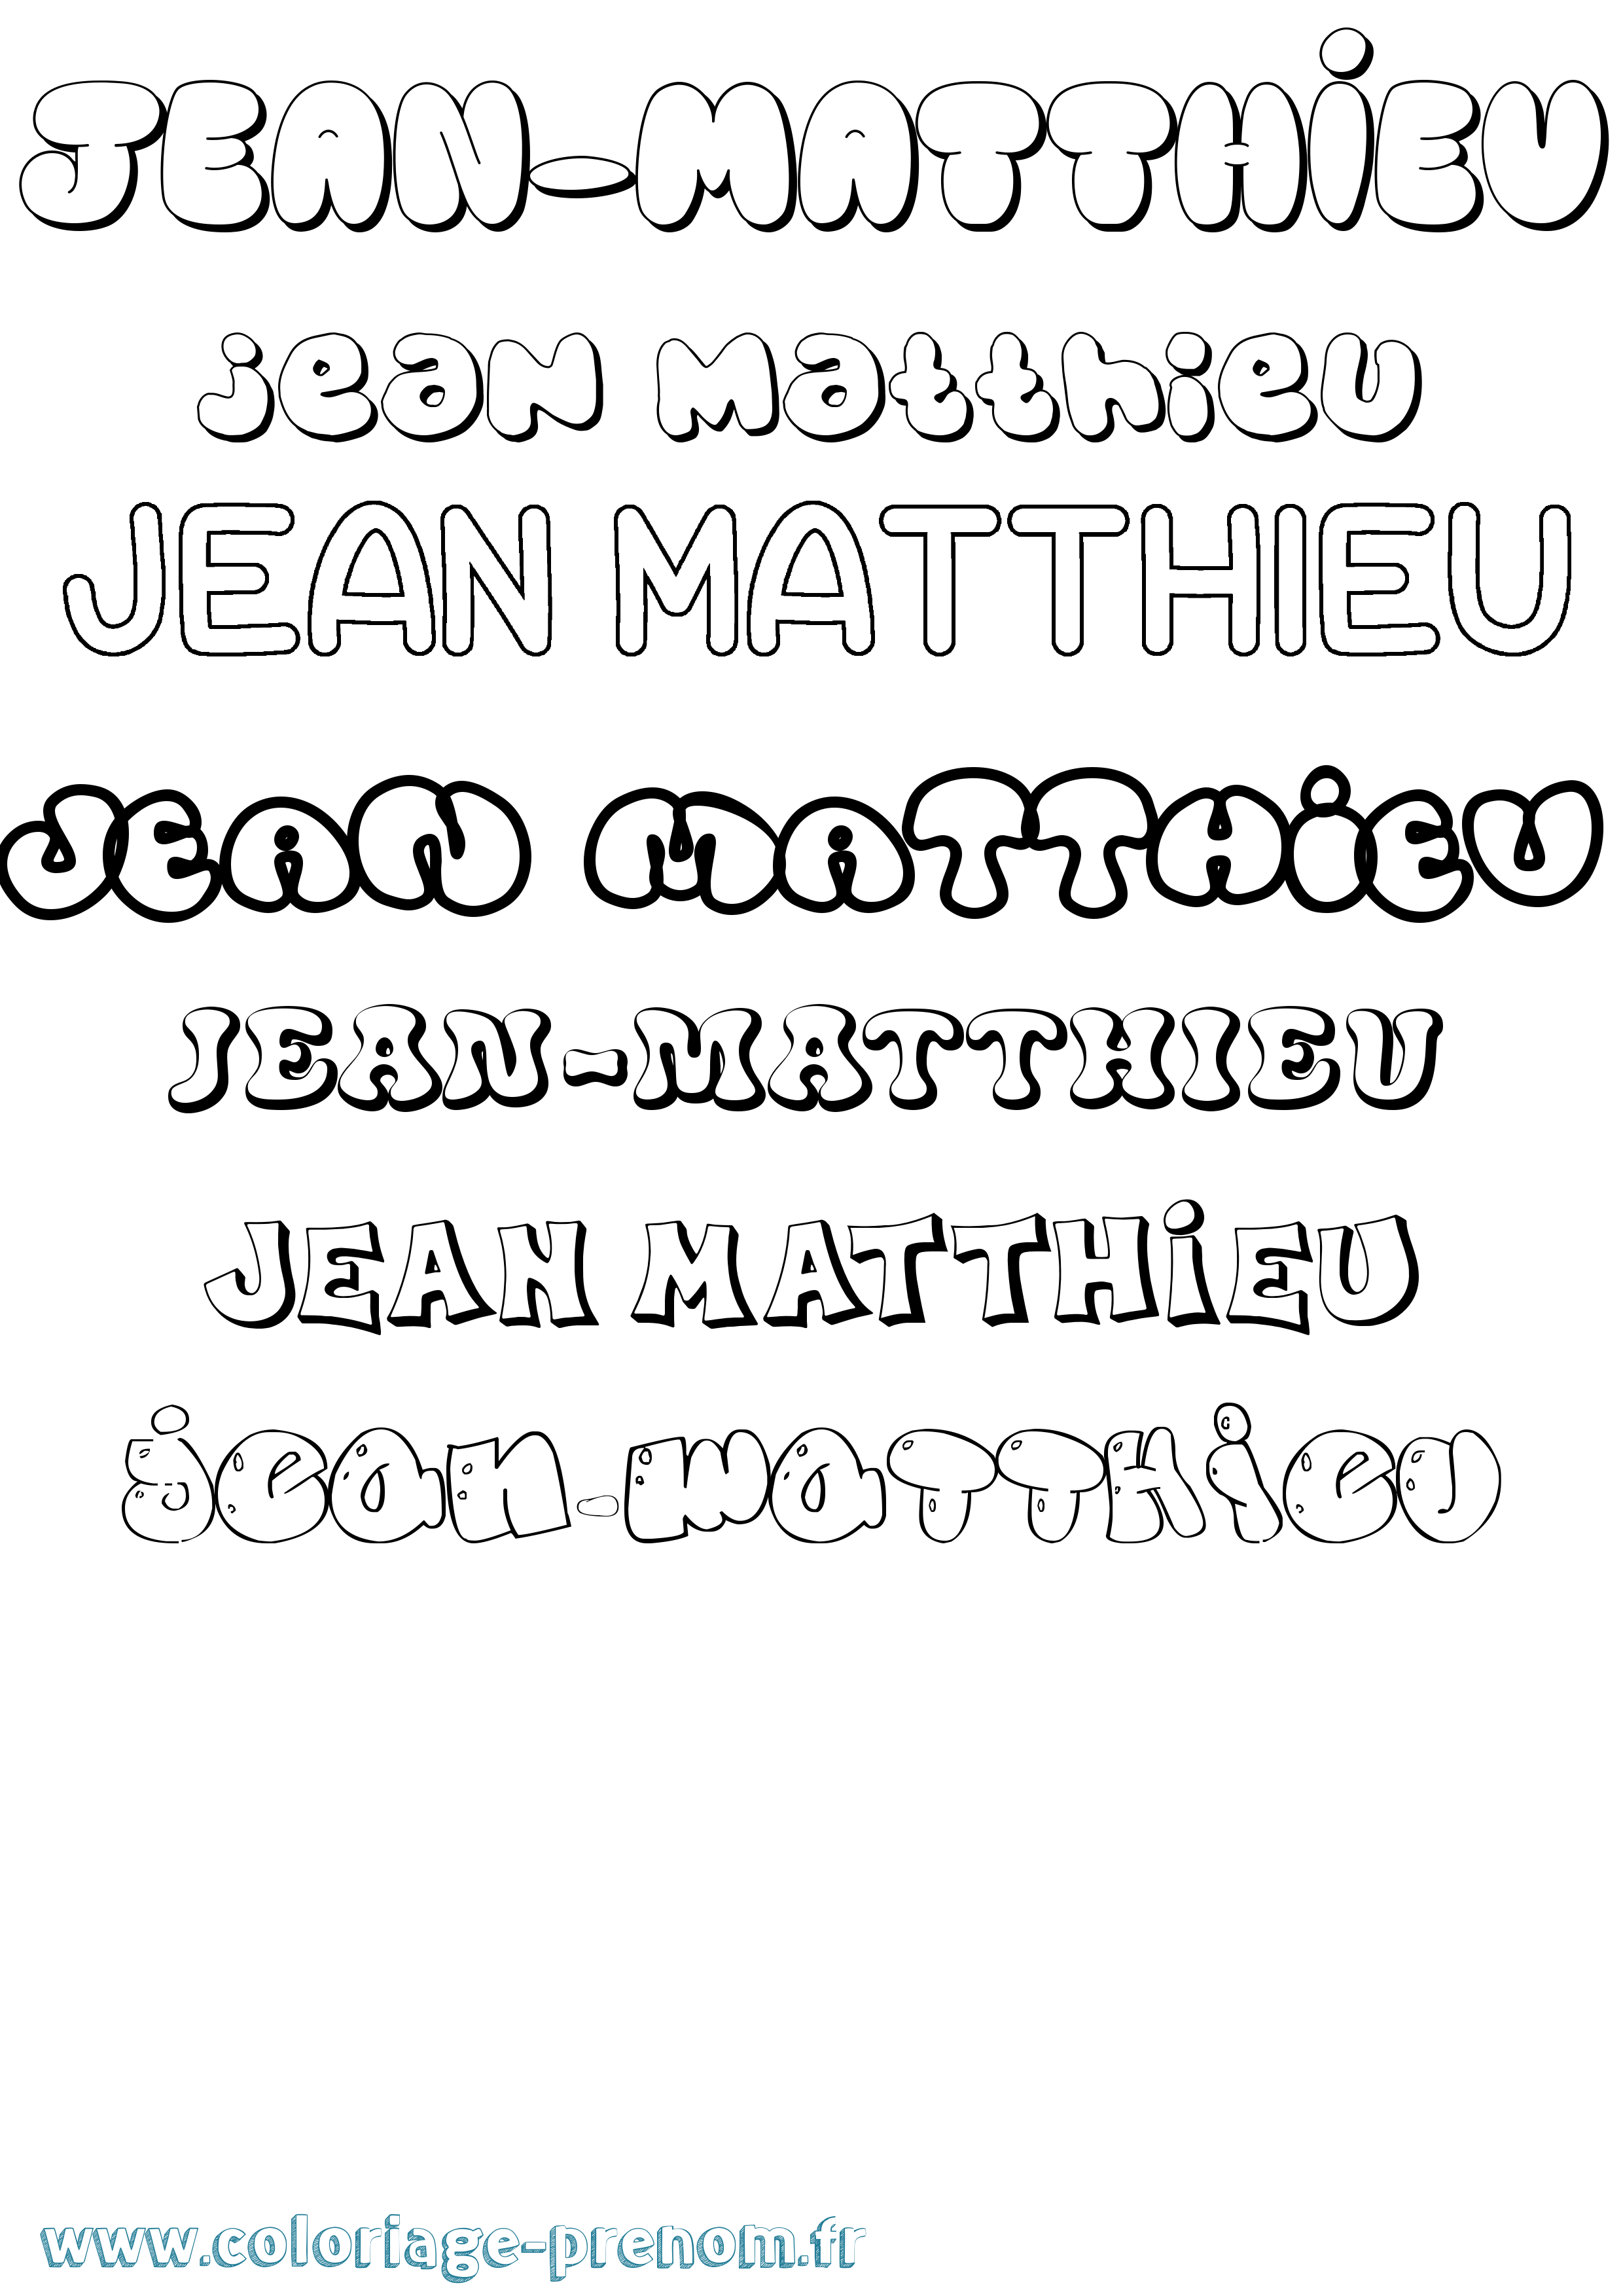 Coloriage prénom Jean-Matthieu Bubble